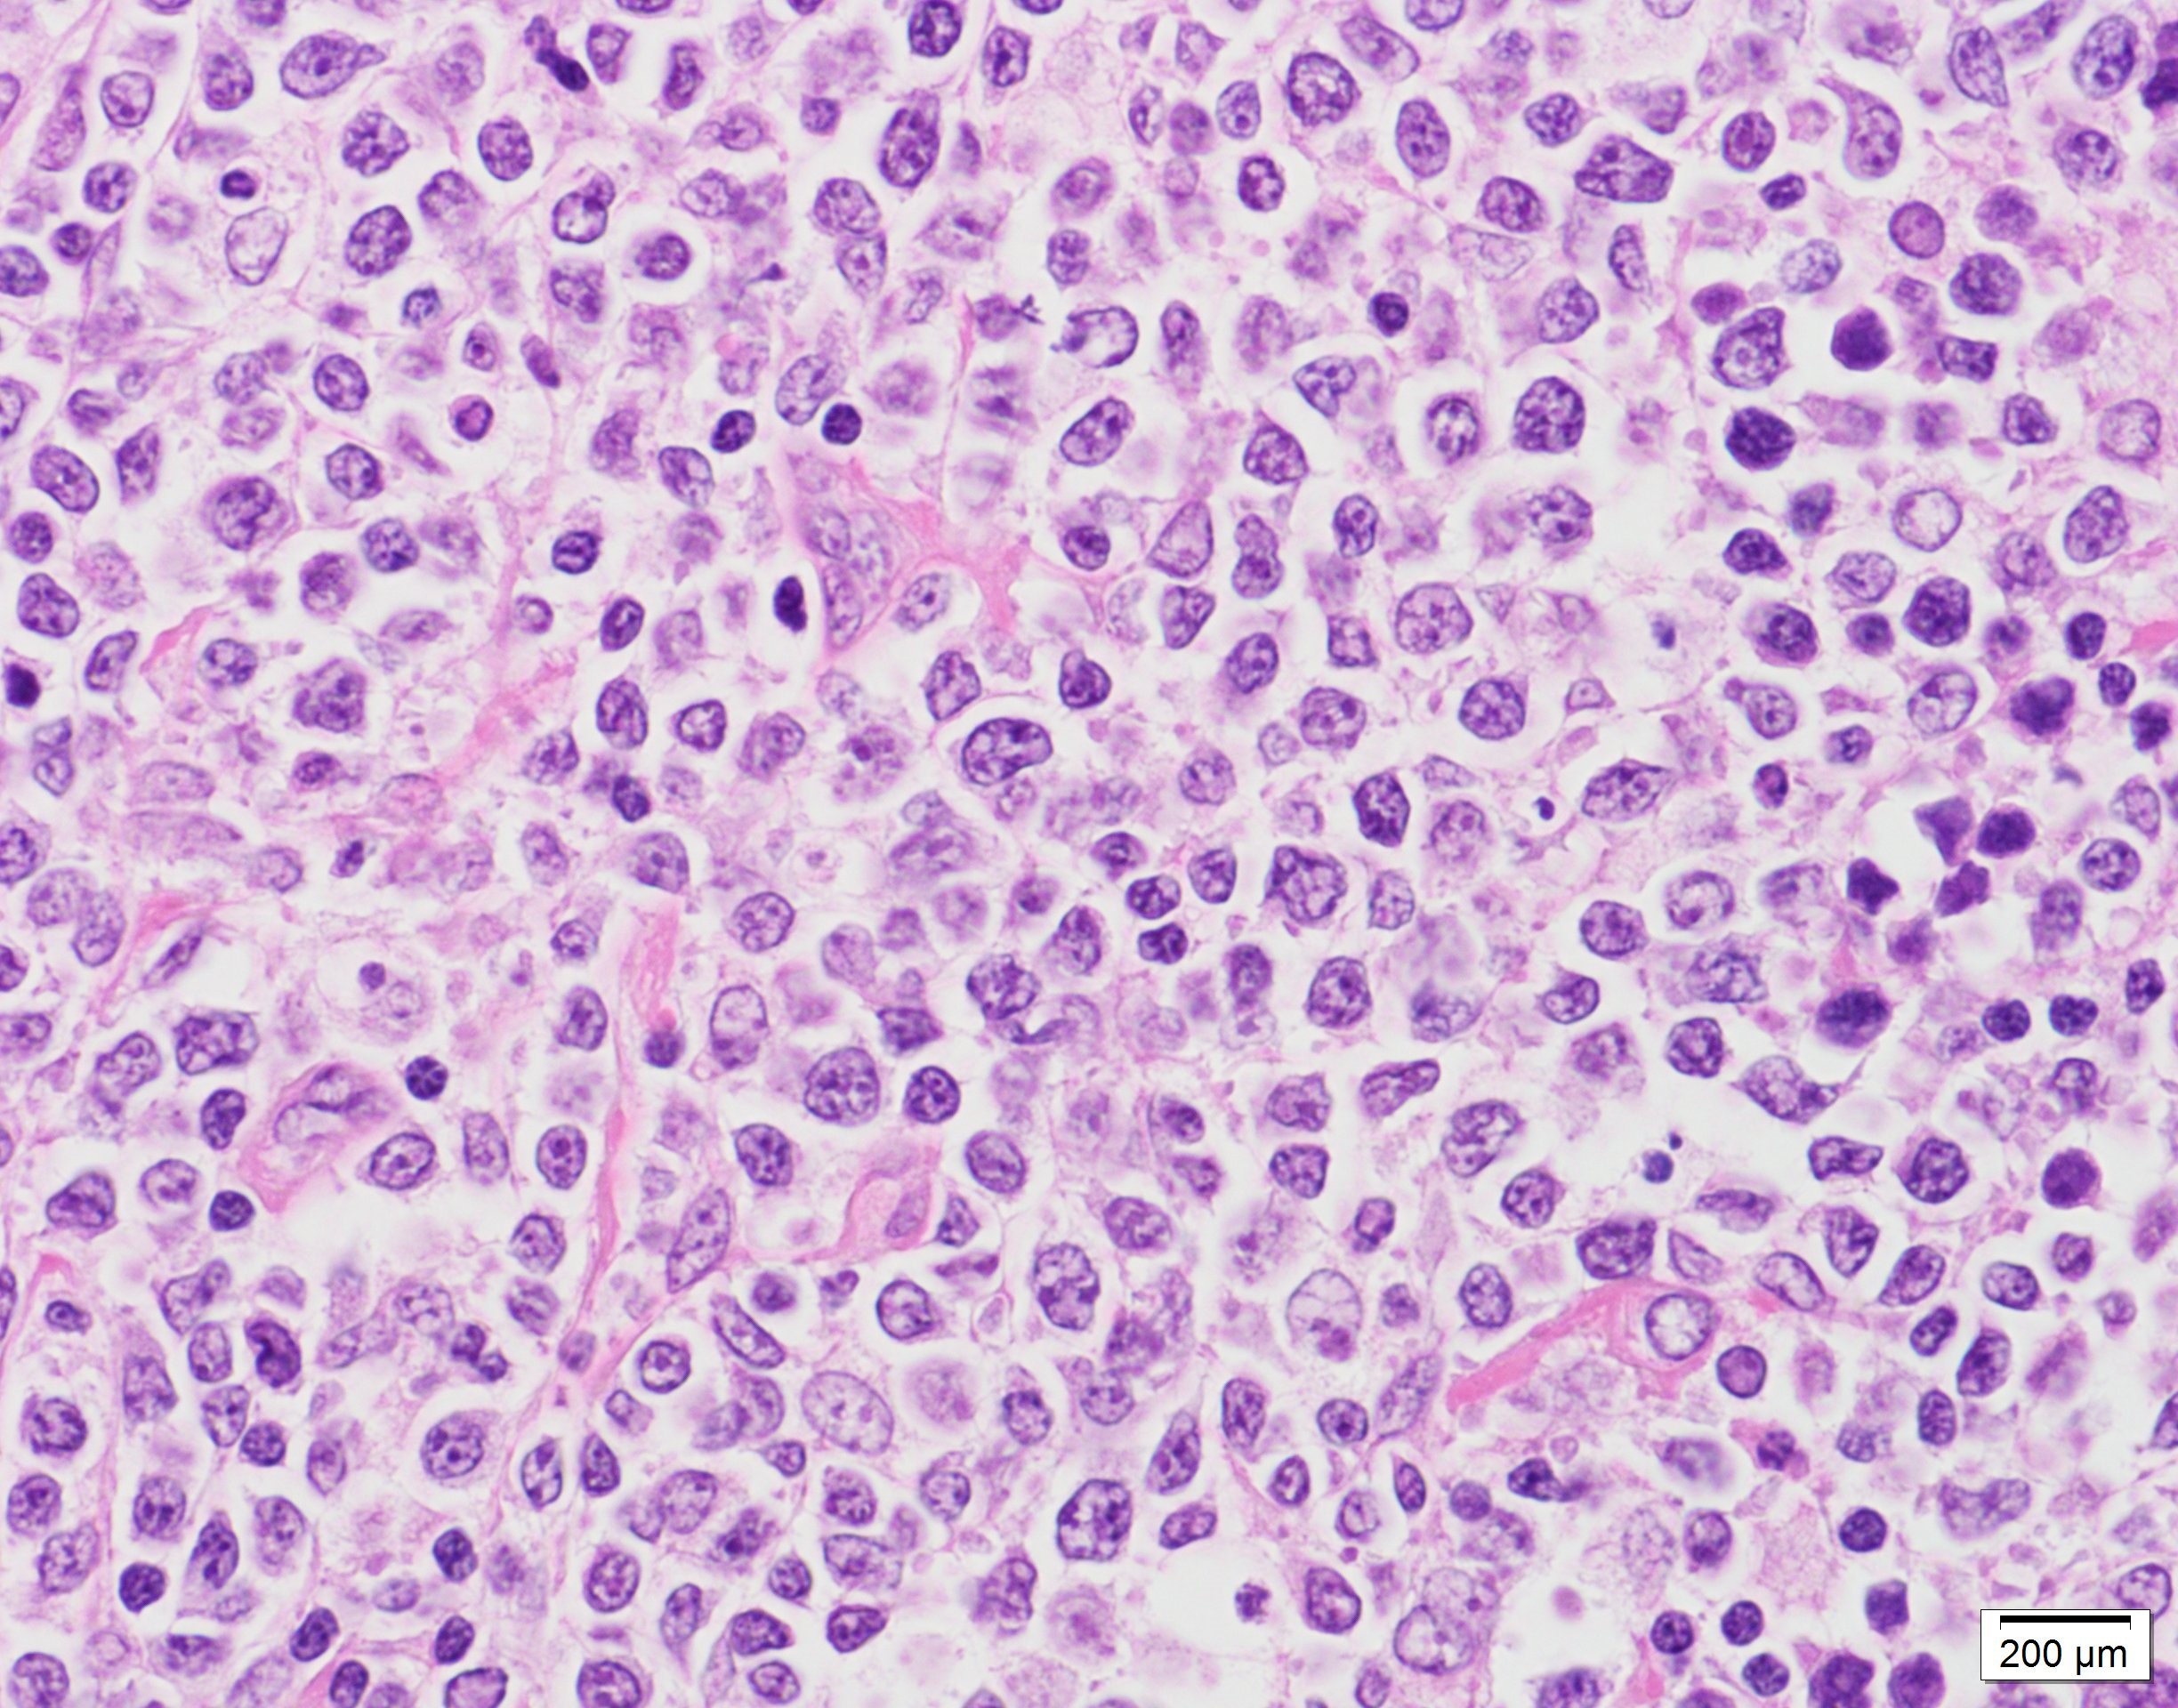 型 大 細胞 b 性 リンパ腫 細胞 びまん びまん性大細胞性B細胞リンパ腫について